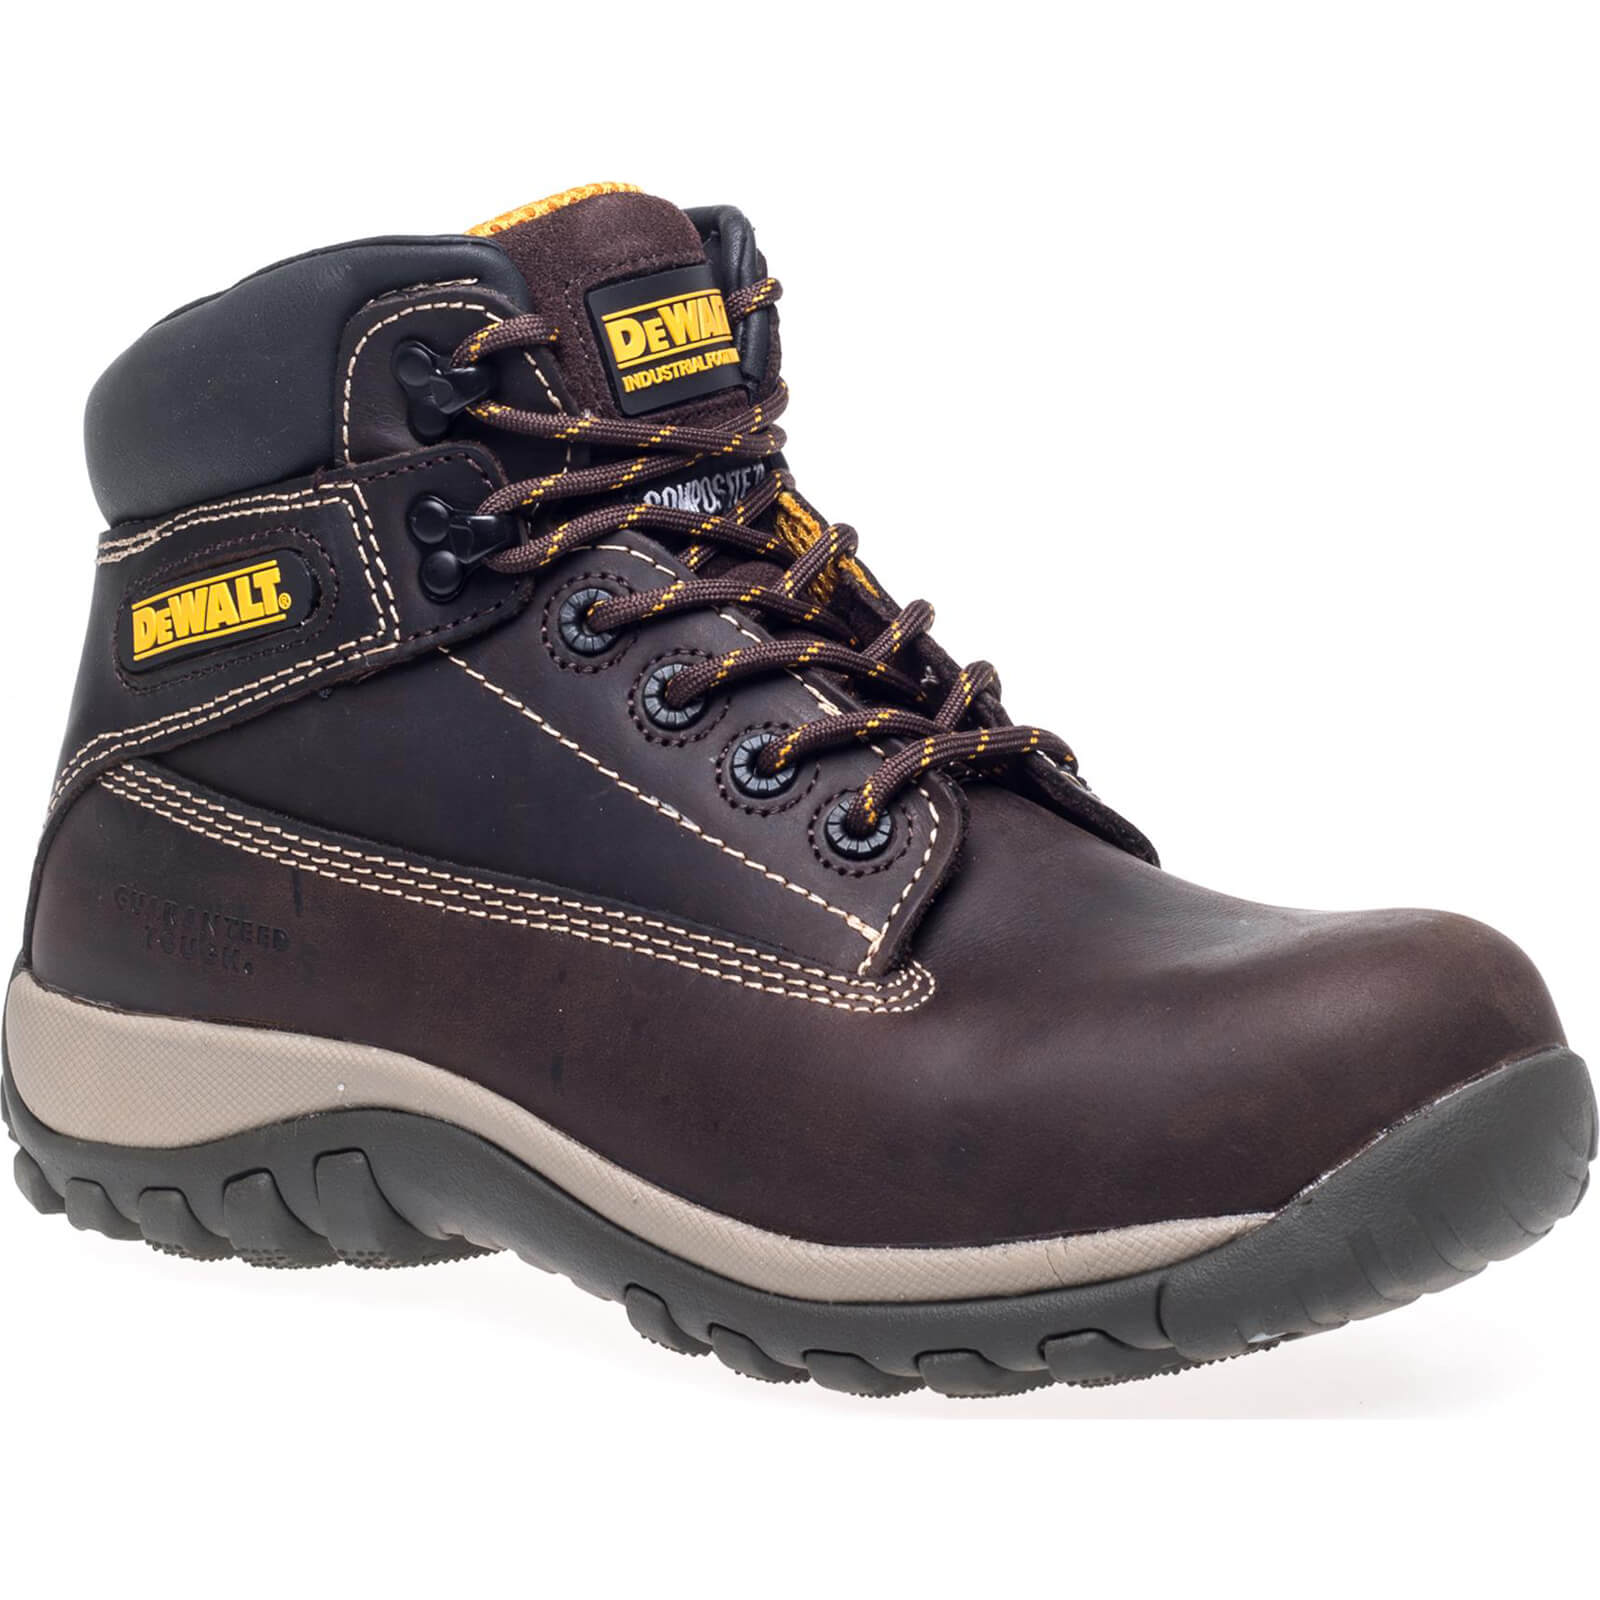 Photo of Dewalt Hammer Non Metallic Safety Boots Brown Size 10